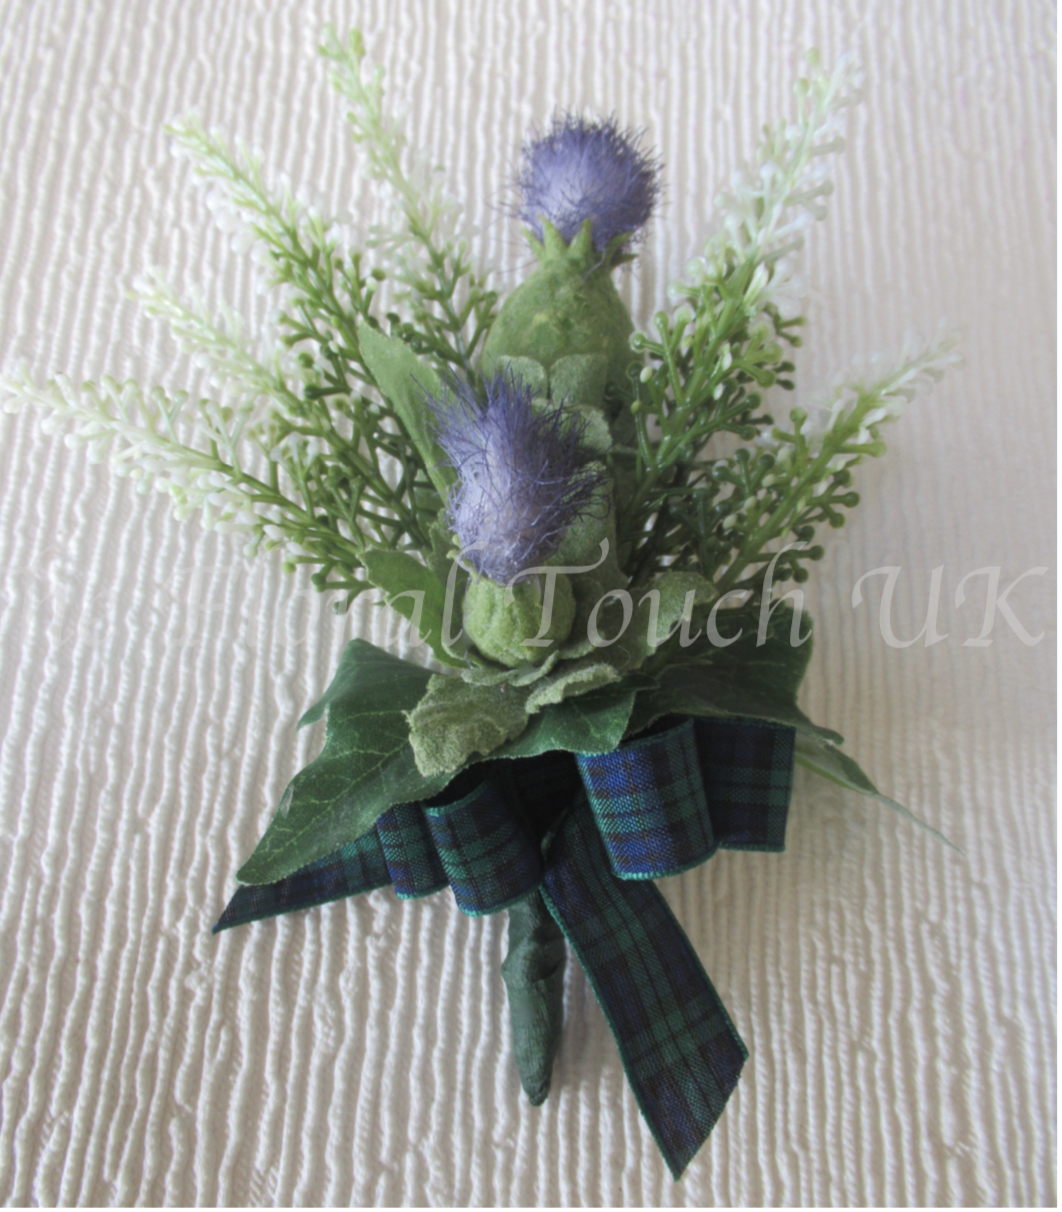 Scottish Thistle & Heather Buttonhole, scottish inspired wedding flowers